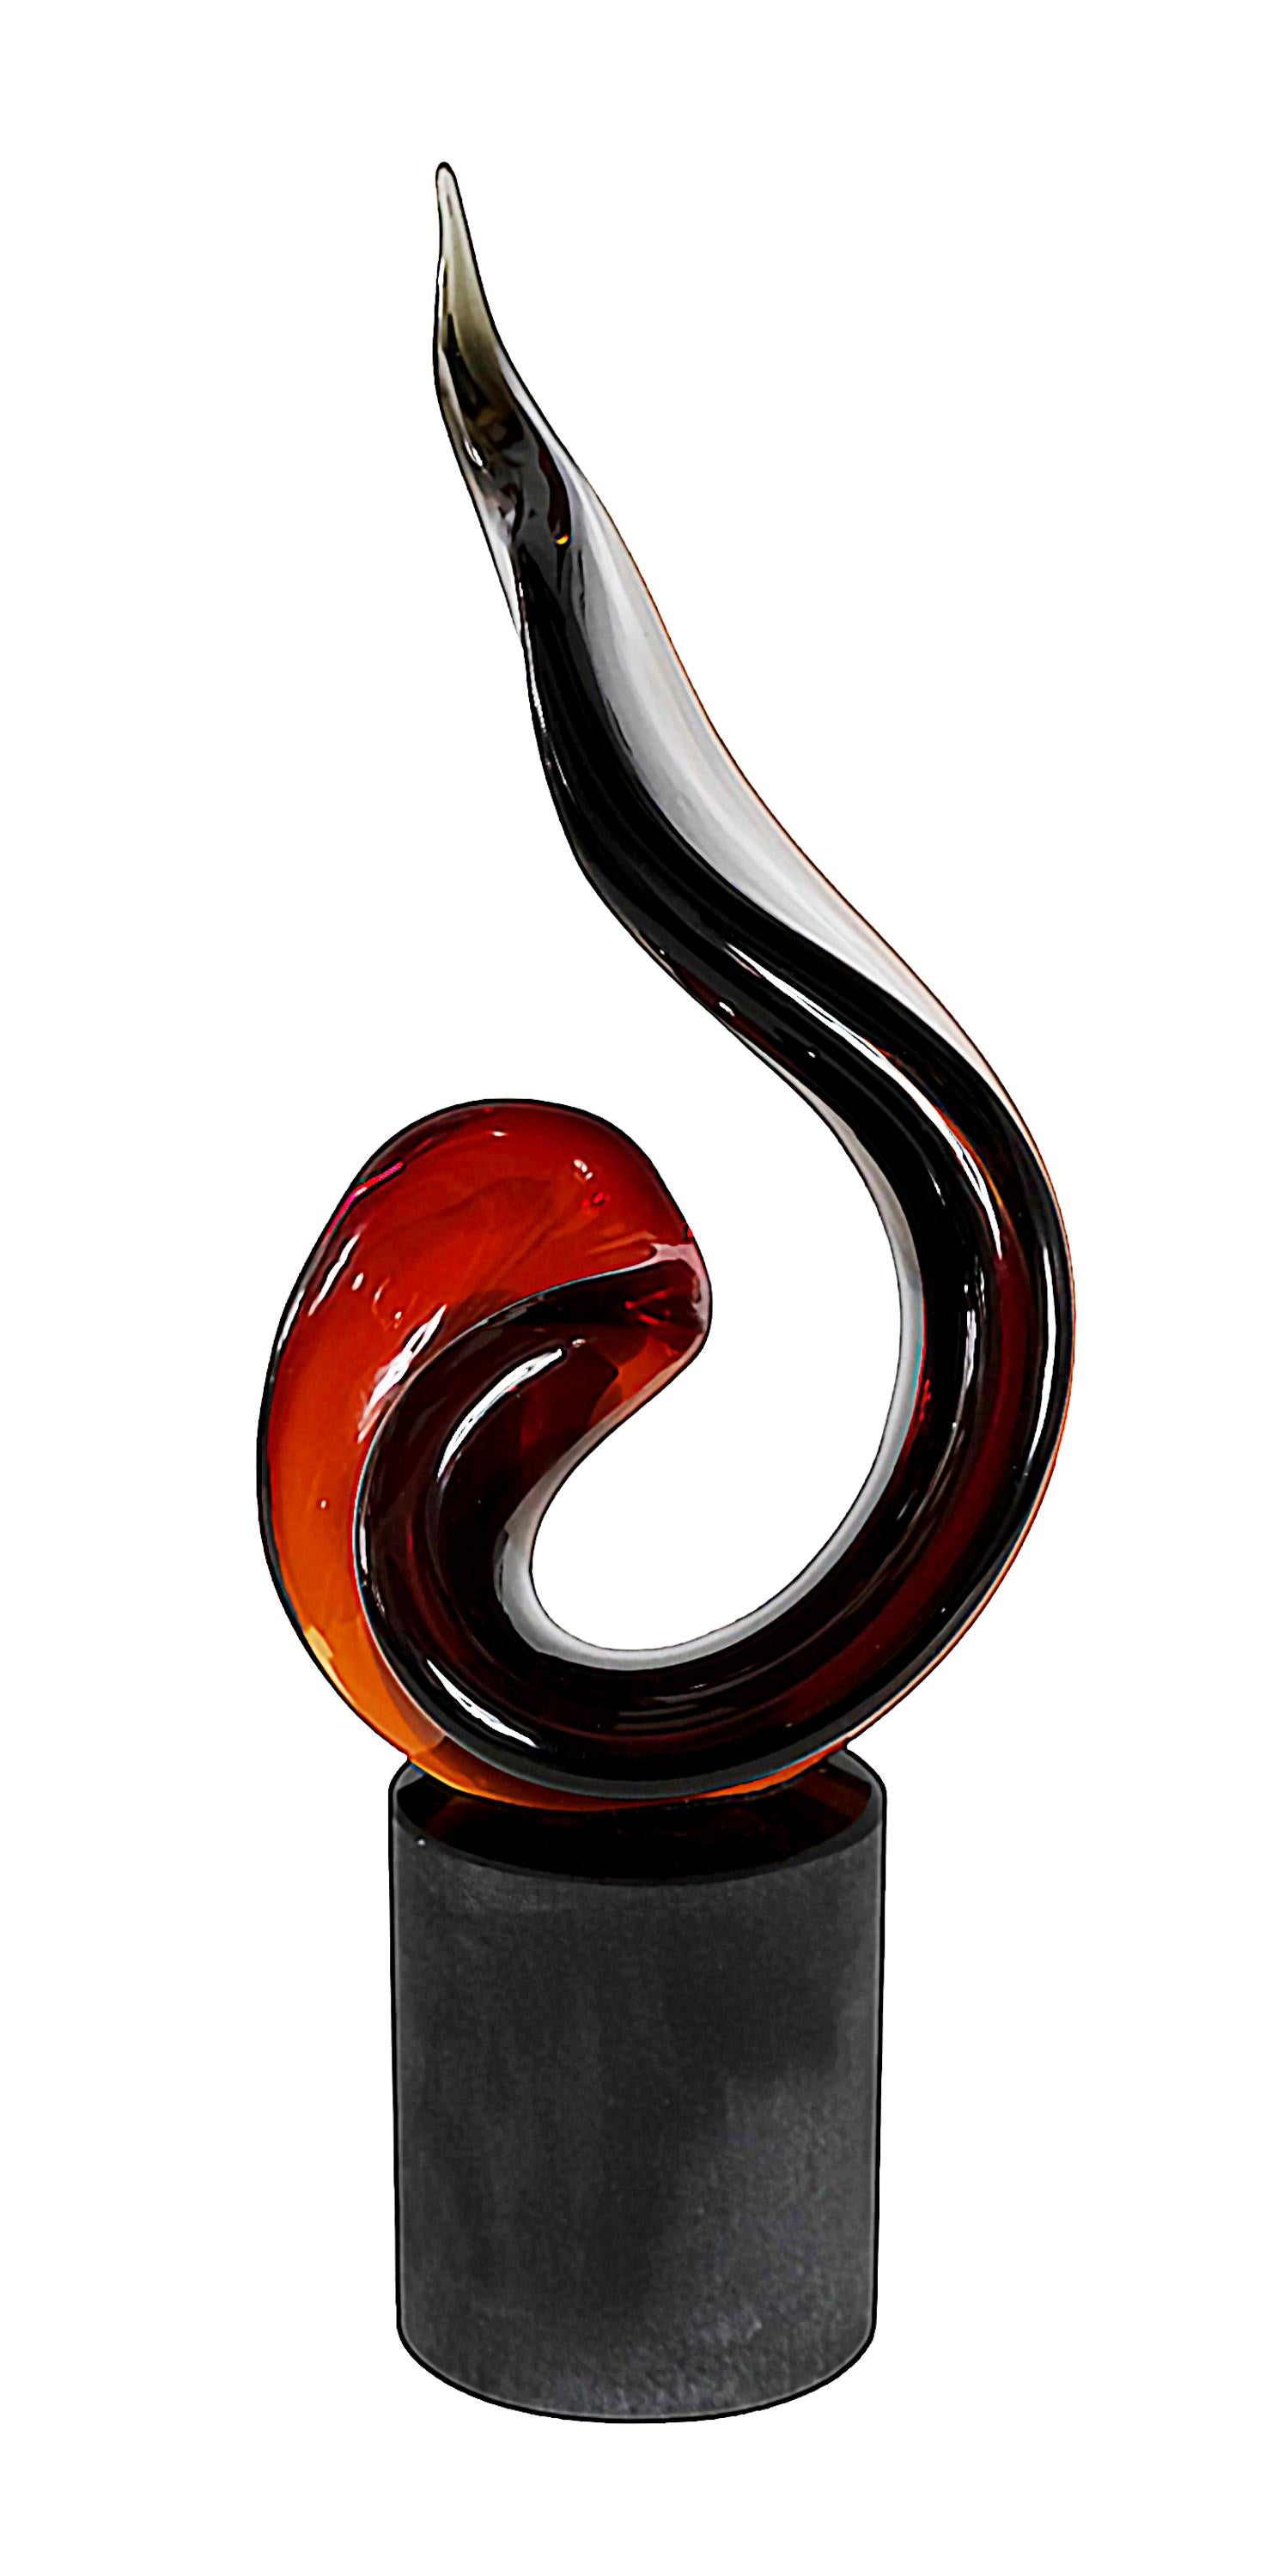 Sculpture abstraite en verre de Murano fabriquée à la main en Italie.
Créé et signé par Romano Dona.
La base est ronde en verre lourd massif noir givré. 
L'élément sculptural est en transition dans les tons de rouge, brun et gris sous la forme d'une